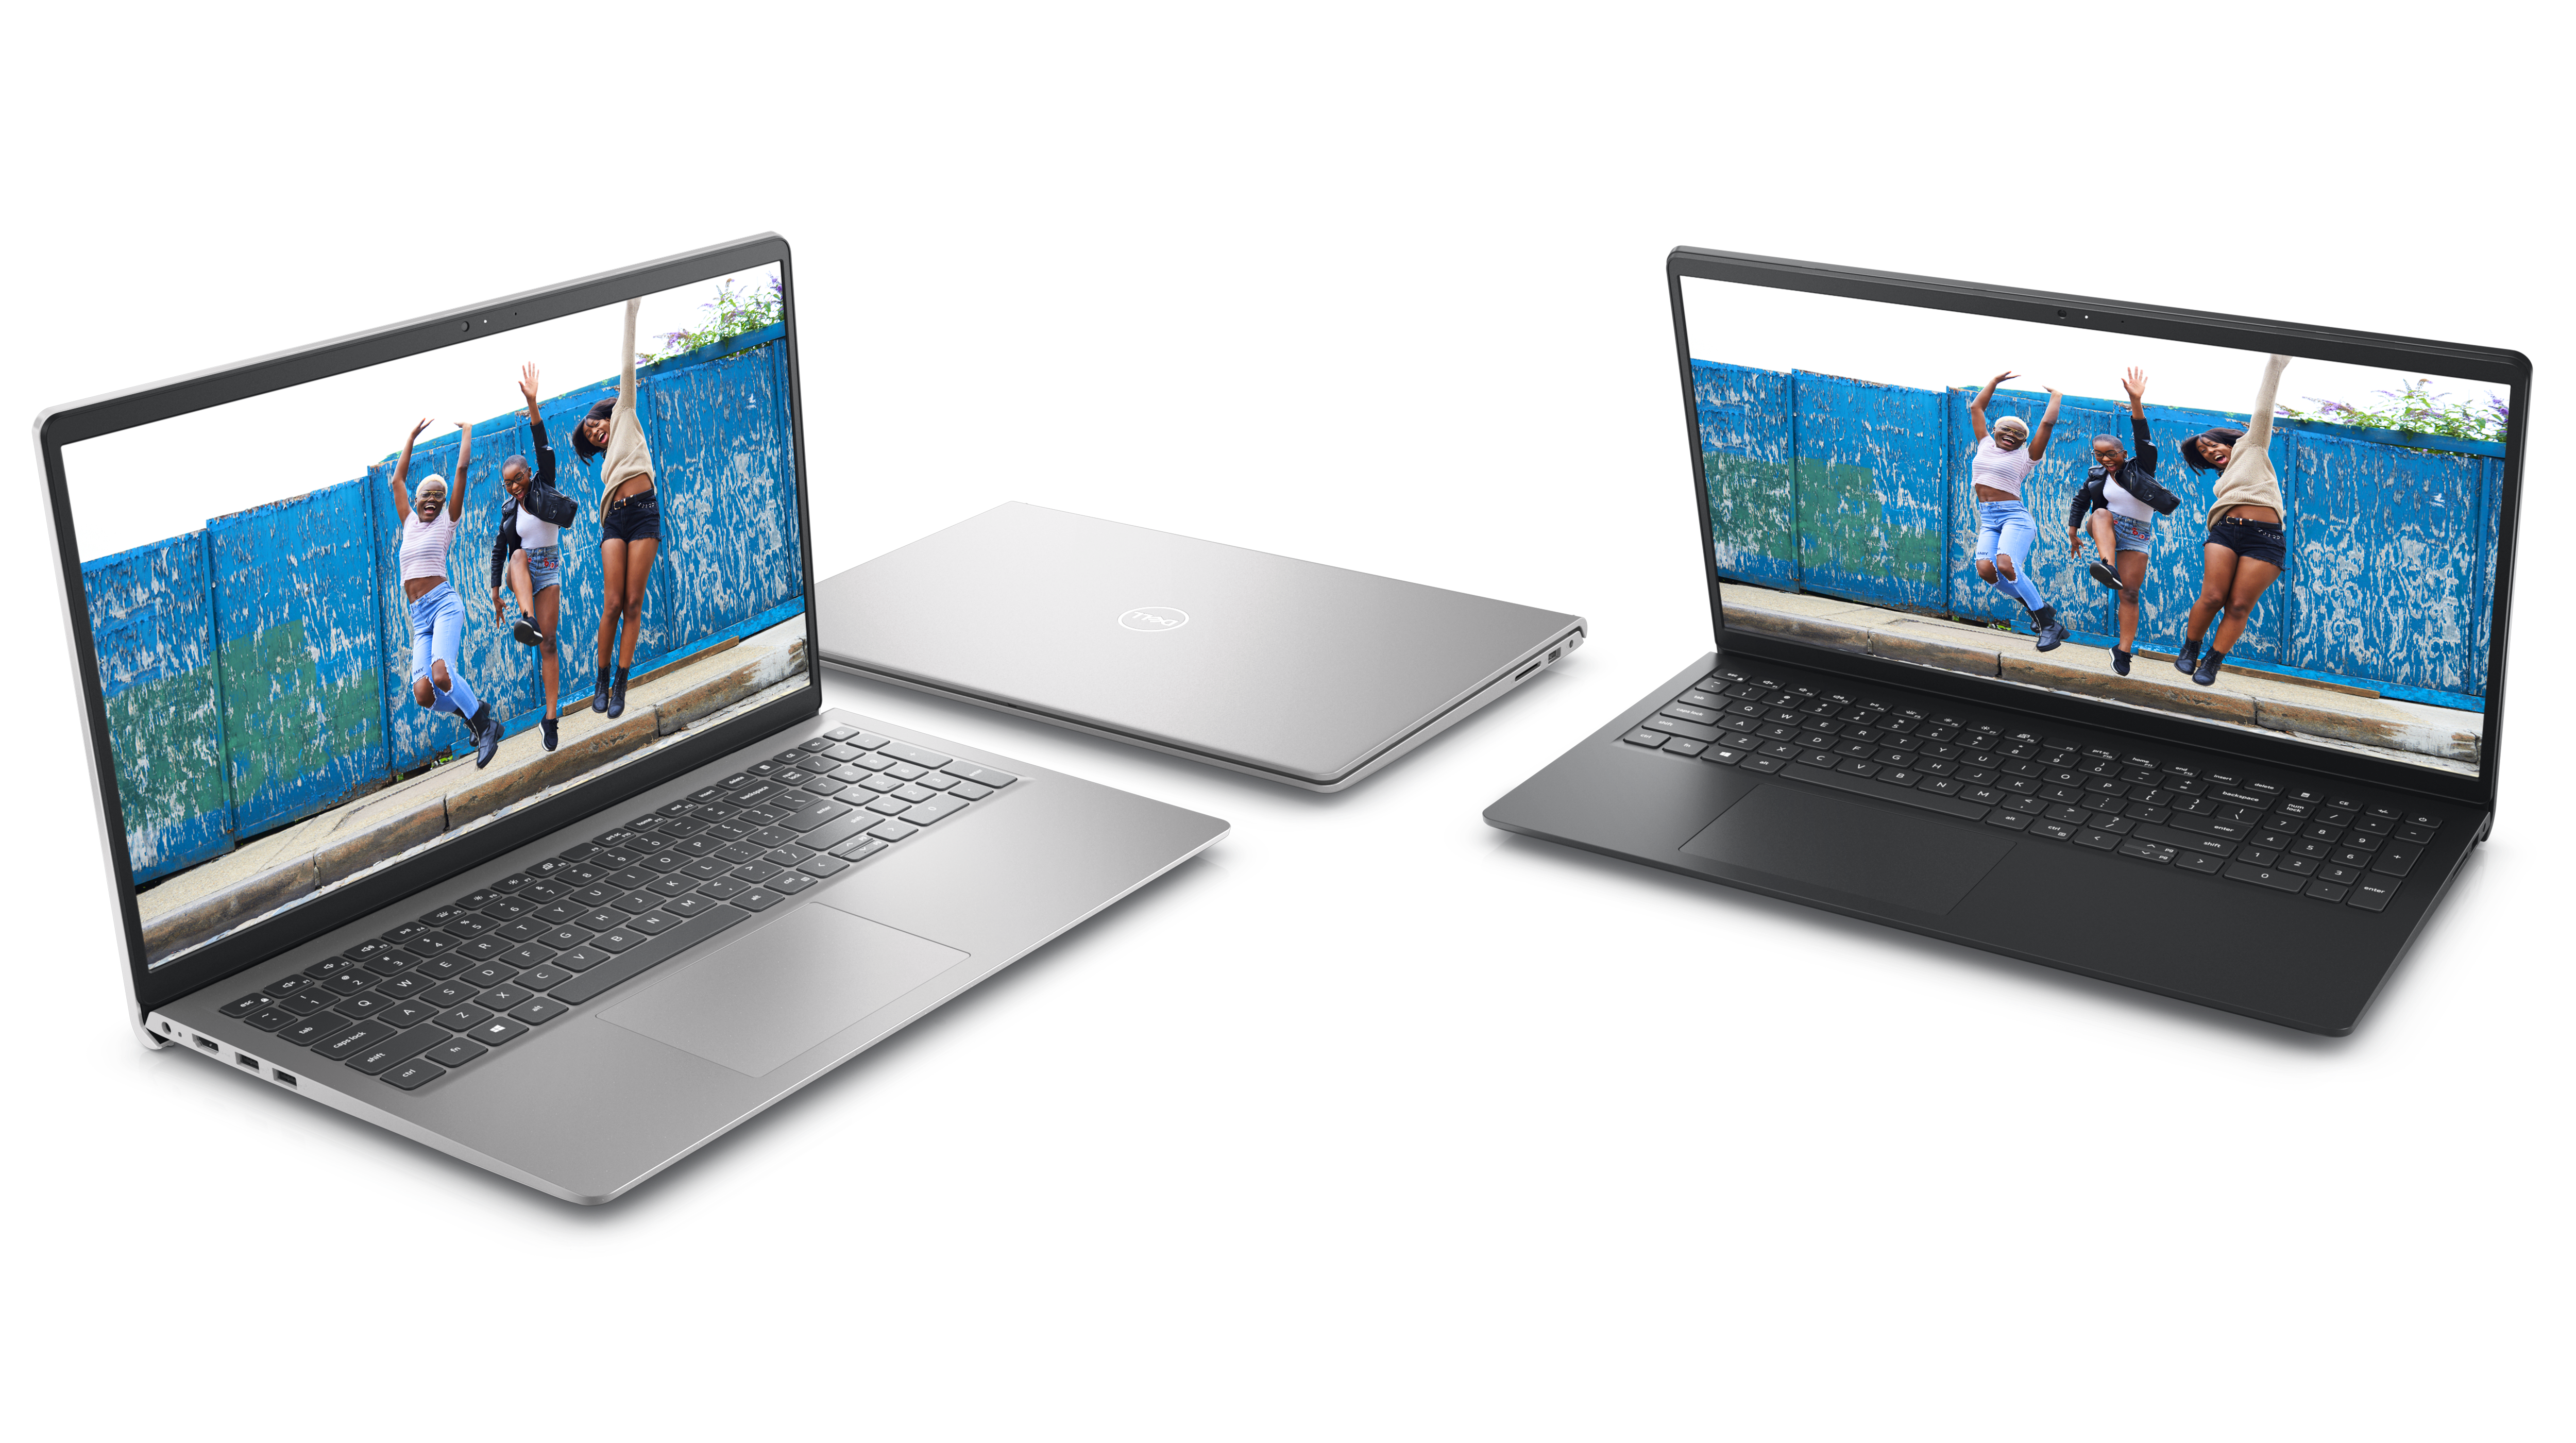 Bild mit vier nebeneinander platzierten Dell Laptops vom Typ Inspiron 15 3520, von denen zwei geöffnet und eins geschlossen sind.